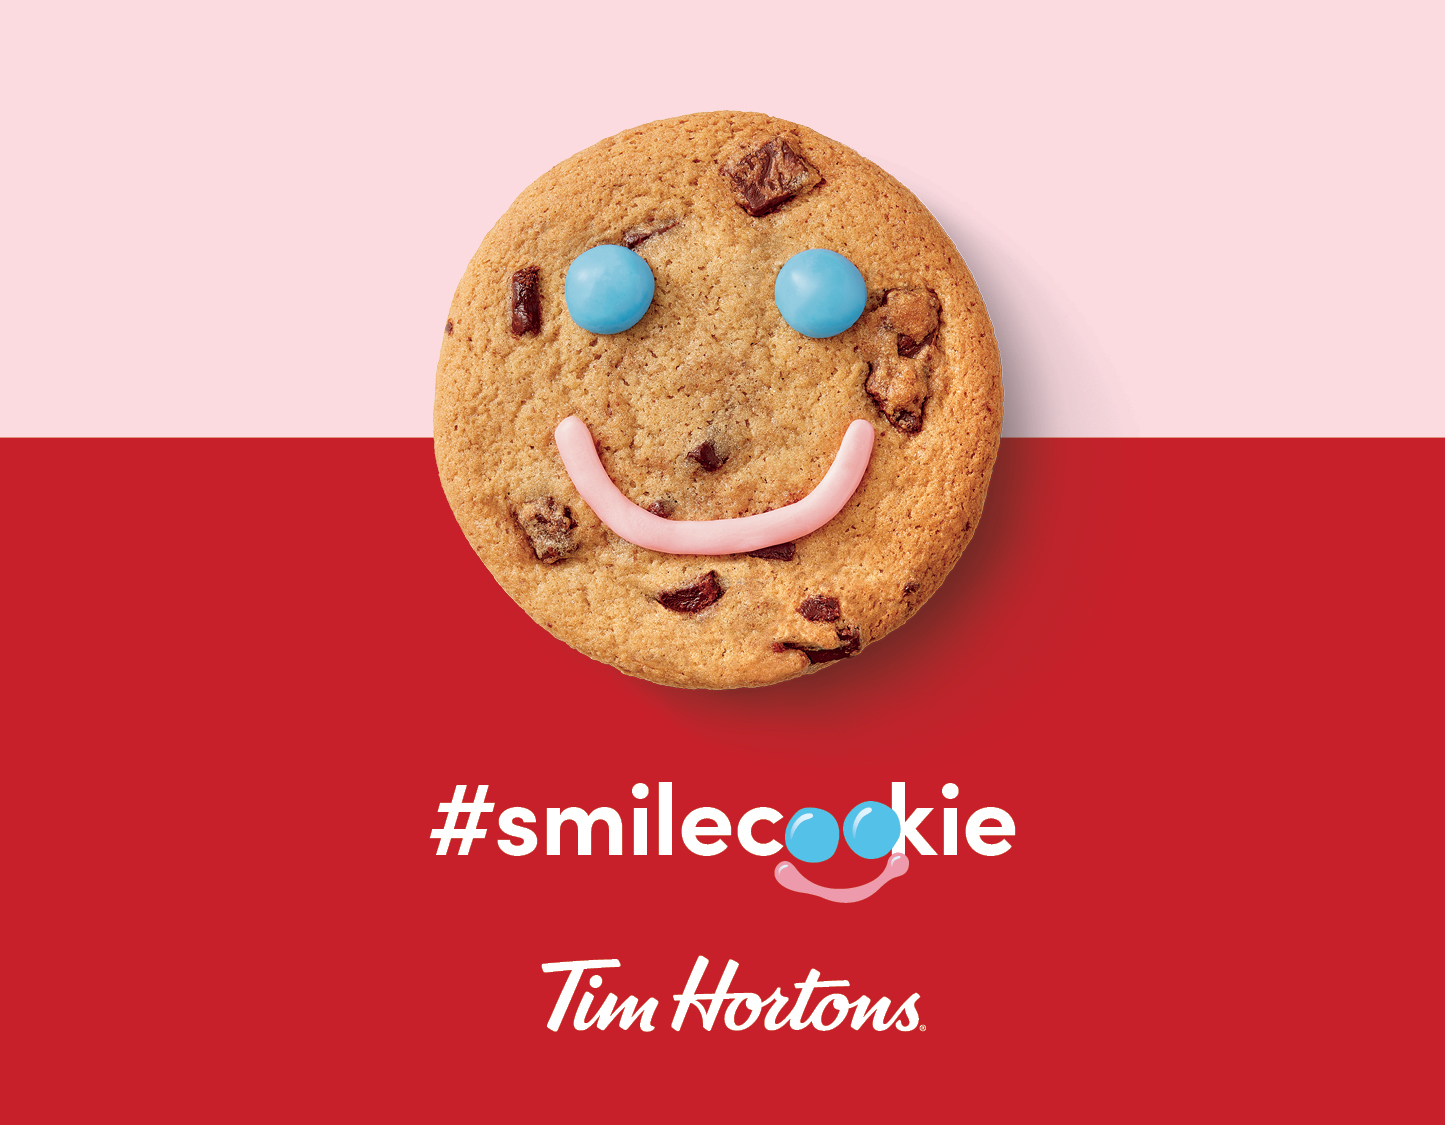 스마일 쿠키 2023: 한 번에 하나씩 행복을 전하는 쿠키